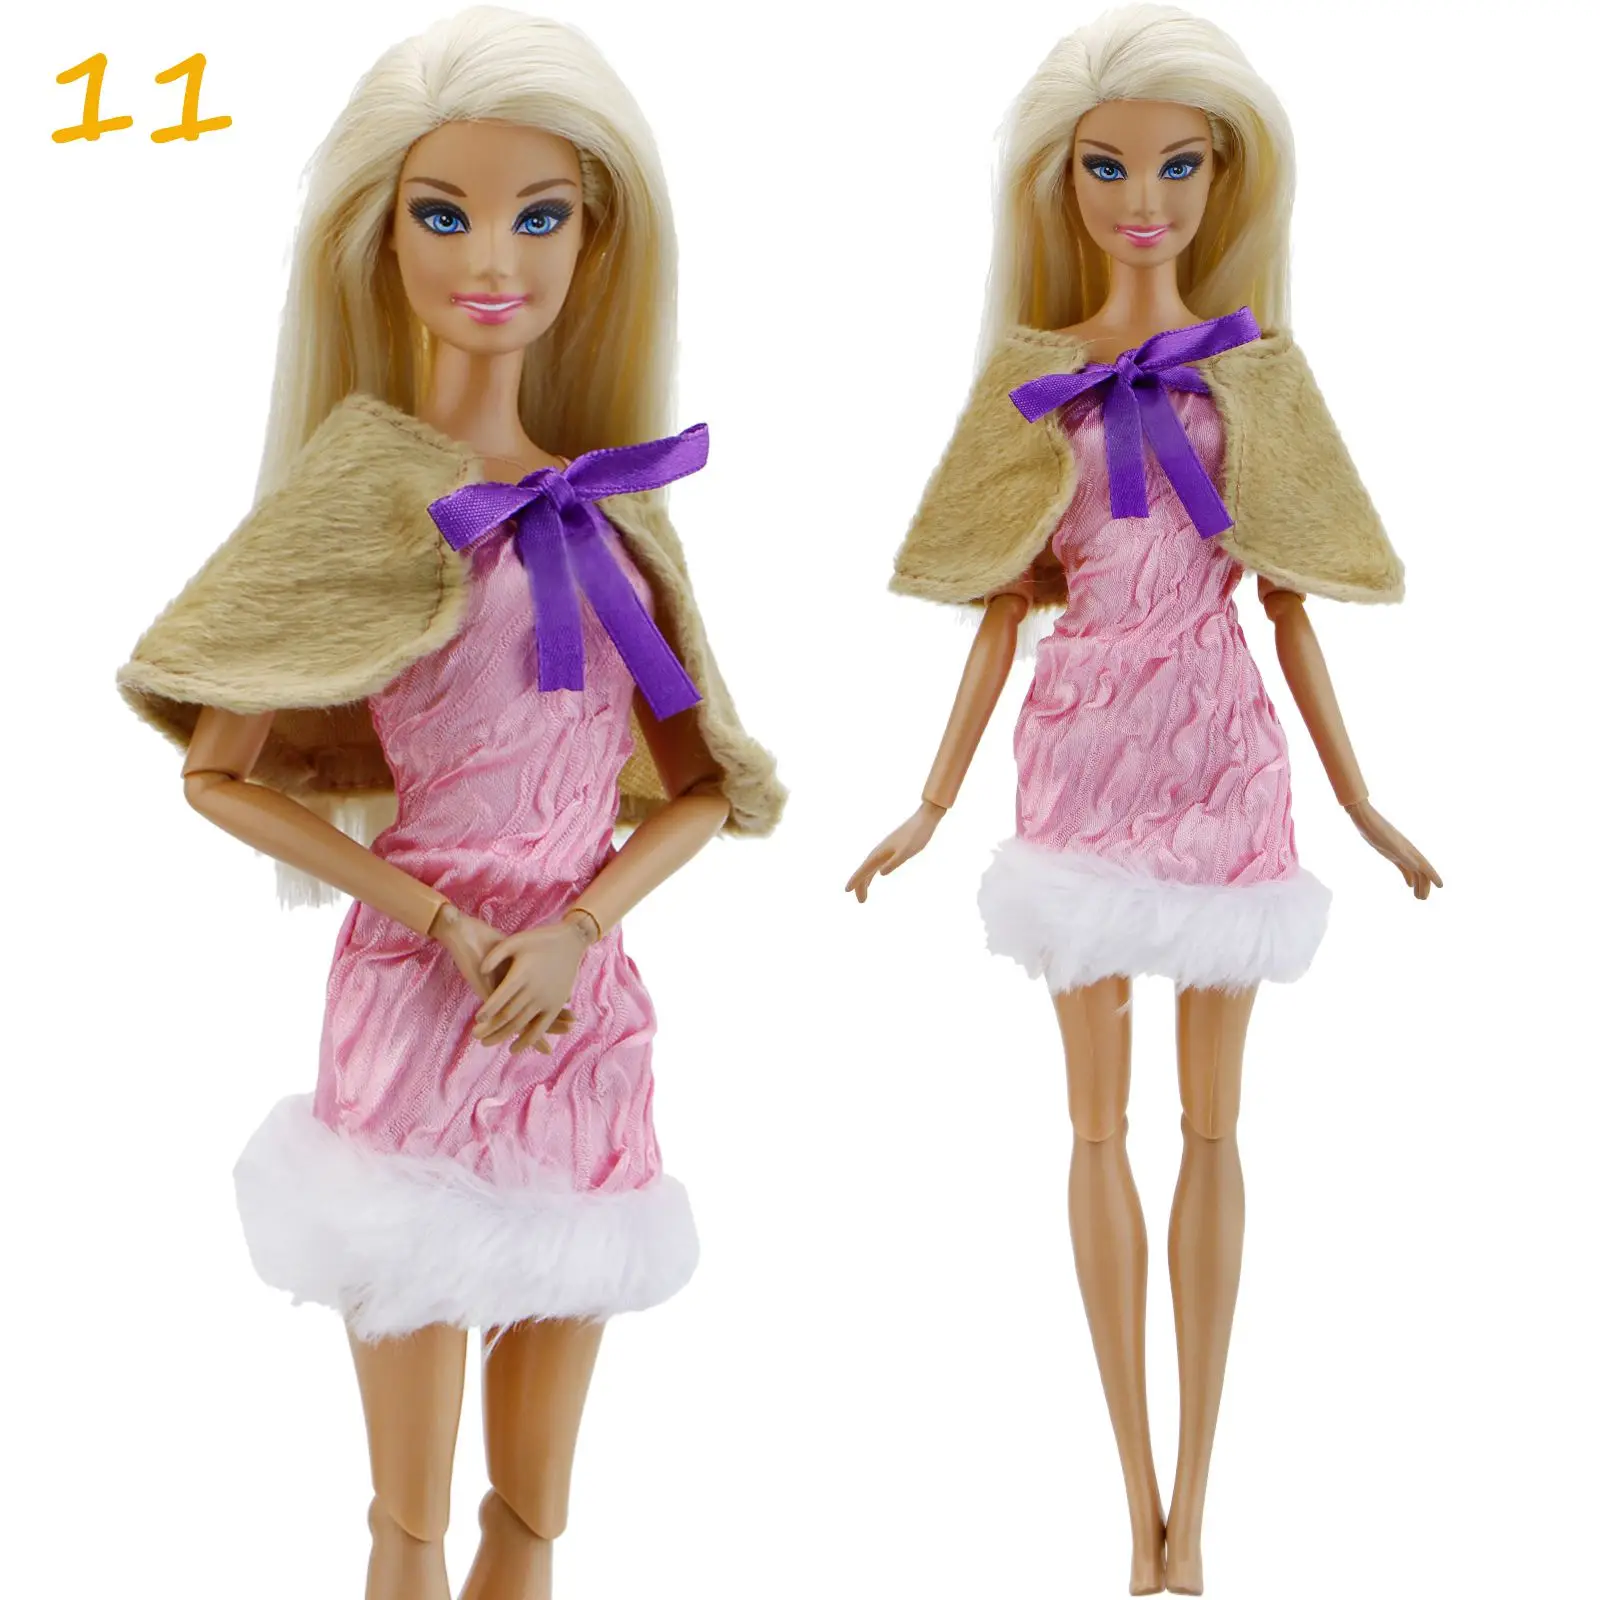 1x платье для девочек повседневная одежда юбка брюки для девочек жилет джинсы пальто кукольный домик интимные аксессуары наряд Одежда куклы Барби - Цвет: 11